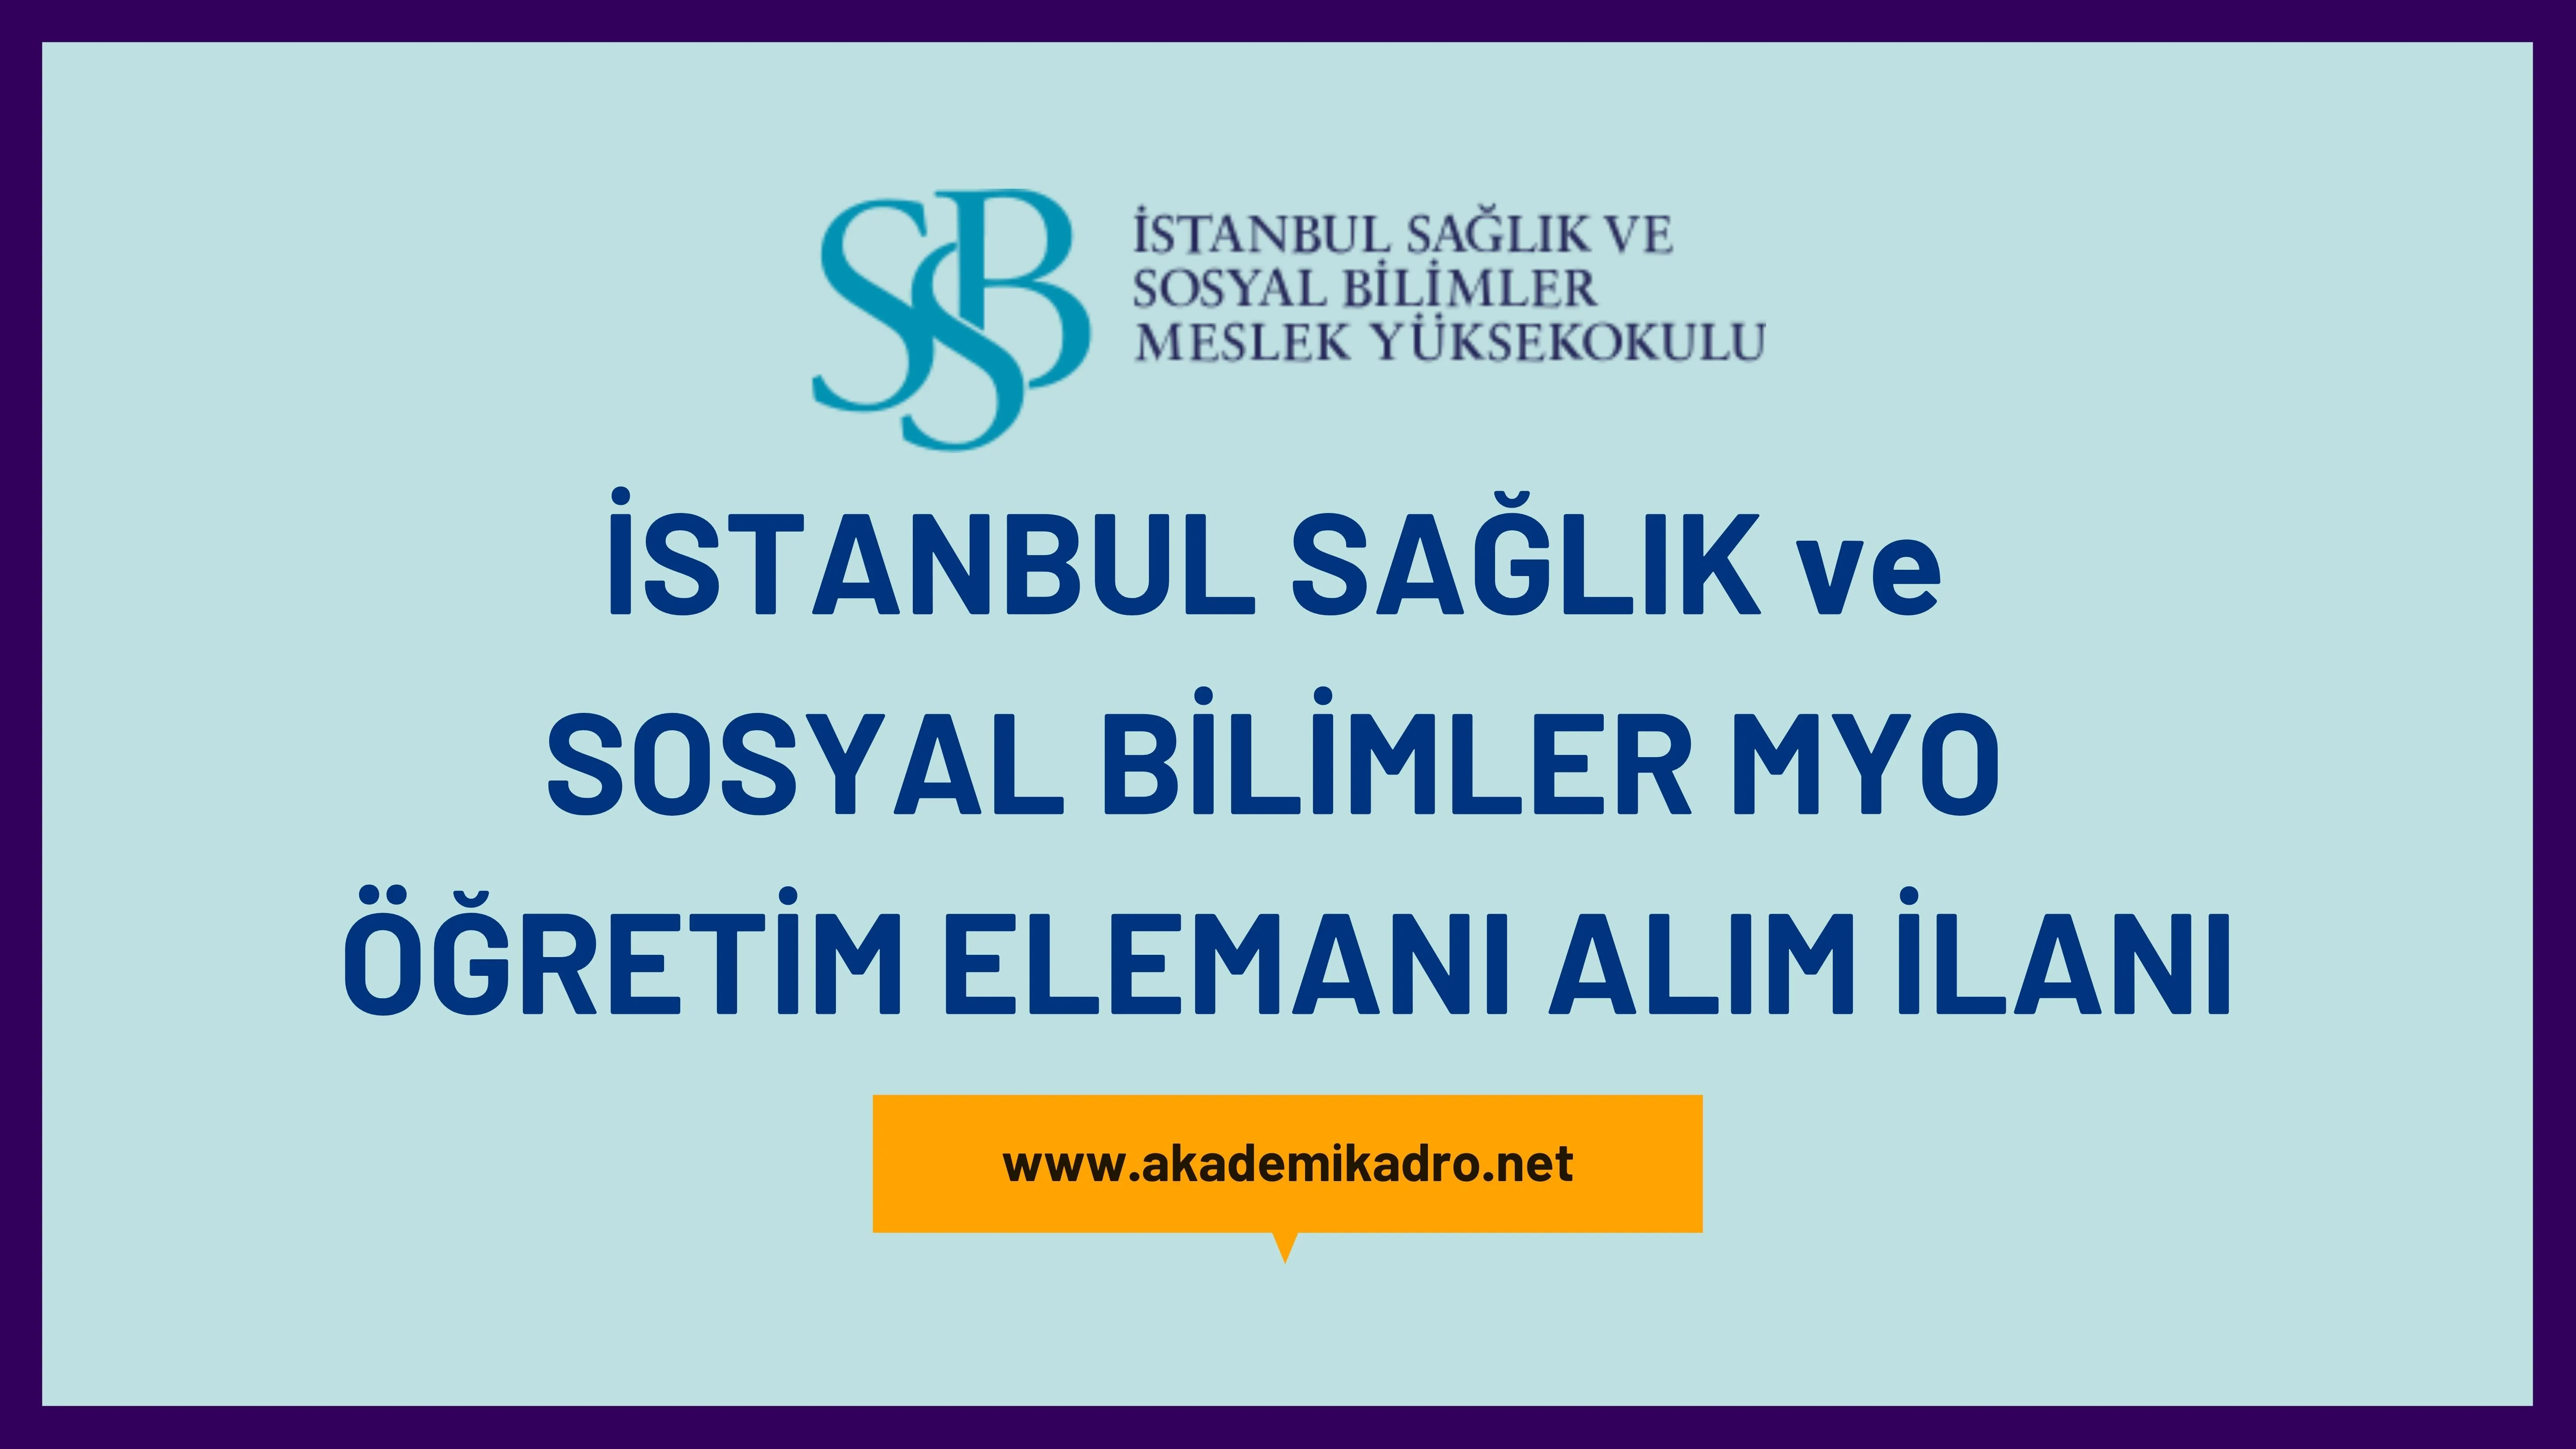 İstanbul Sağlık ve Sosyal Bilimler Meslek Yüksekokulu Öğretim görevlisi alacaktır. Son başvuru tarihi 23 Ocak 2023